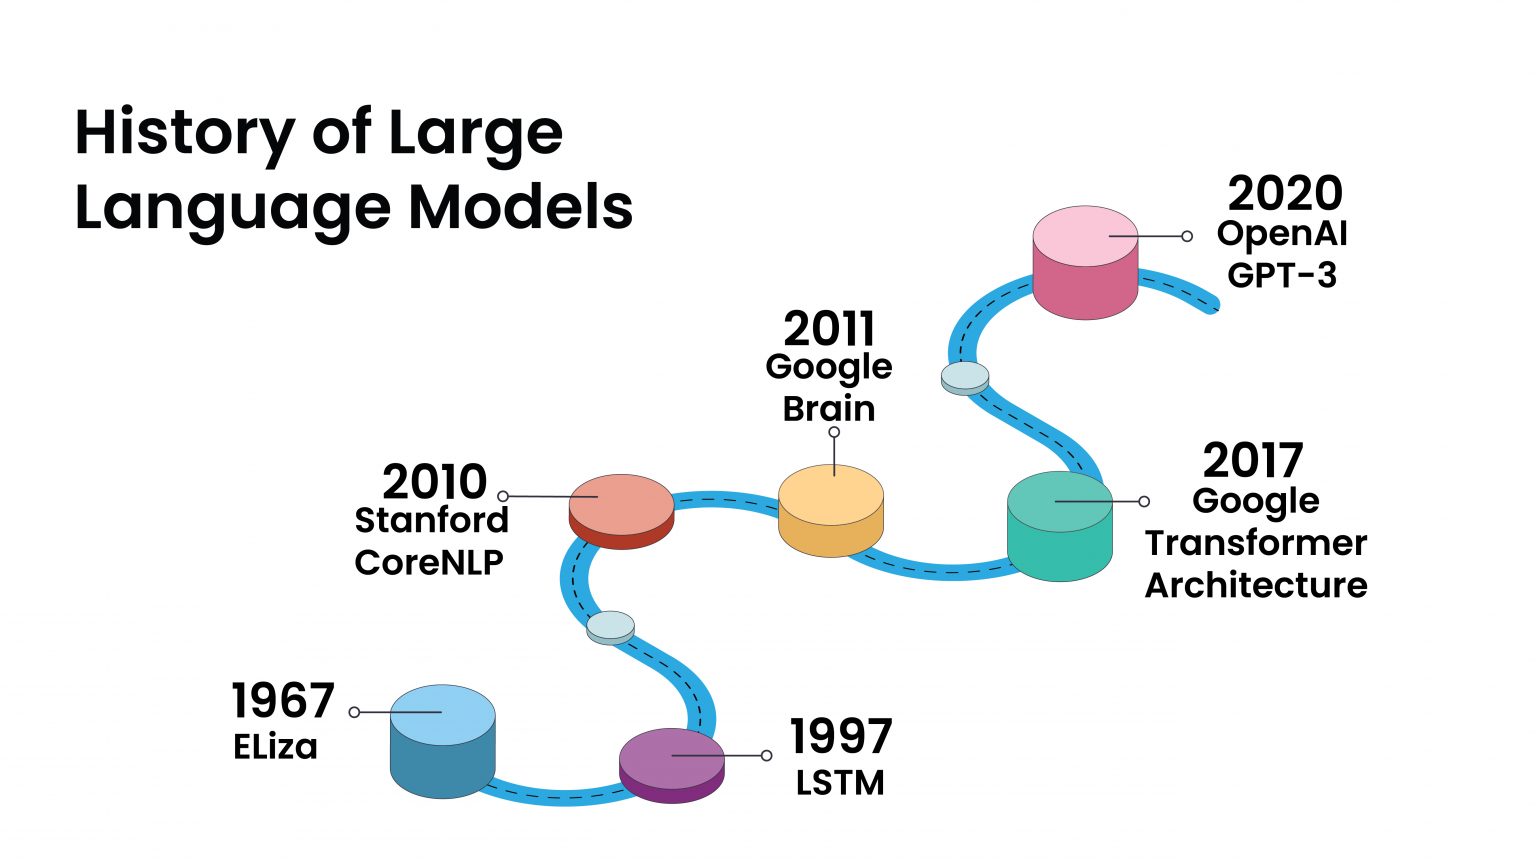 Evolution of Large Language Models